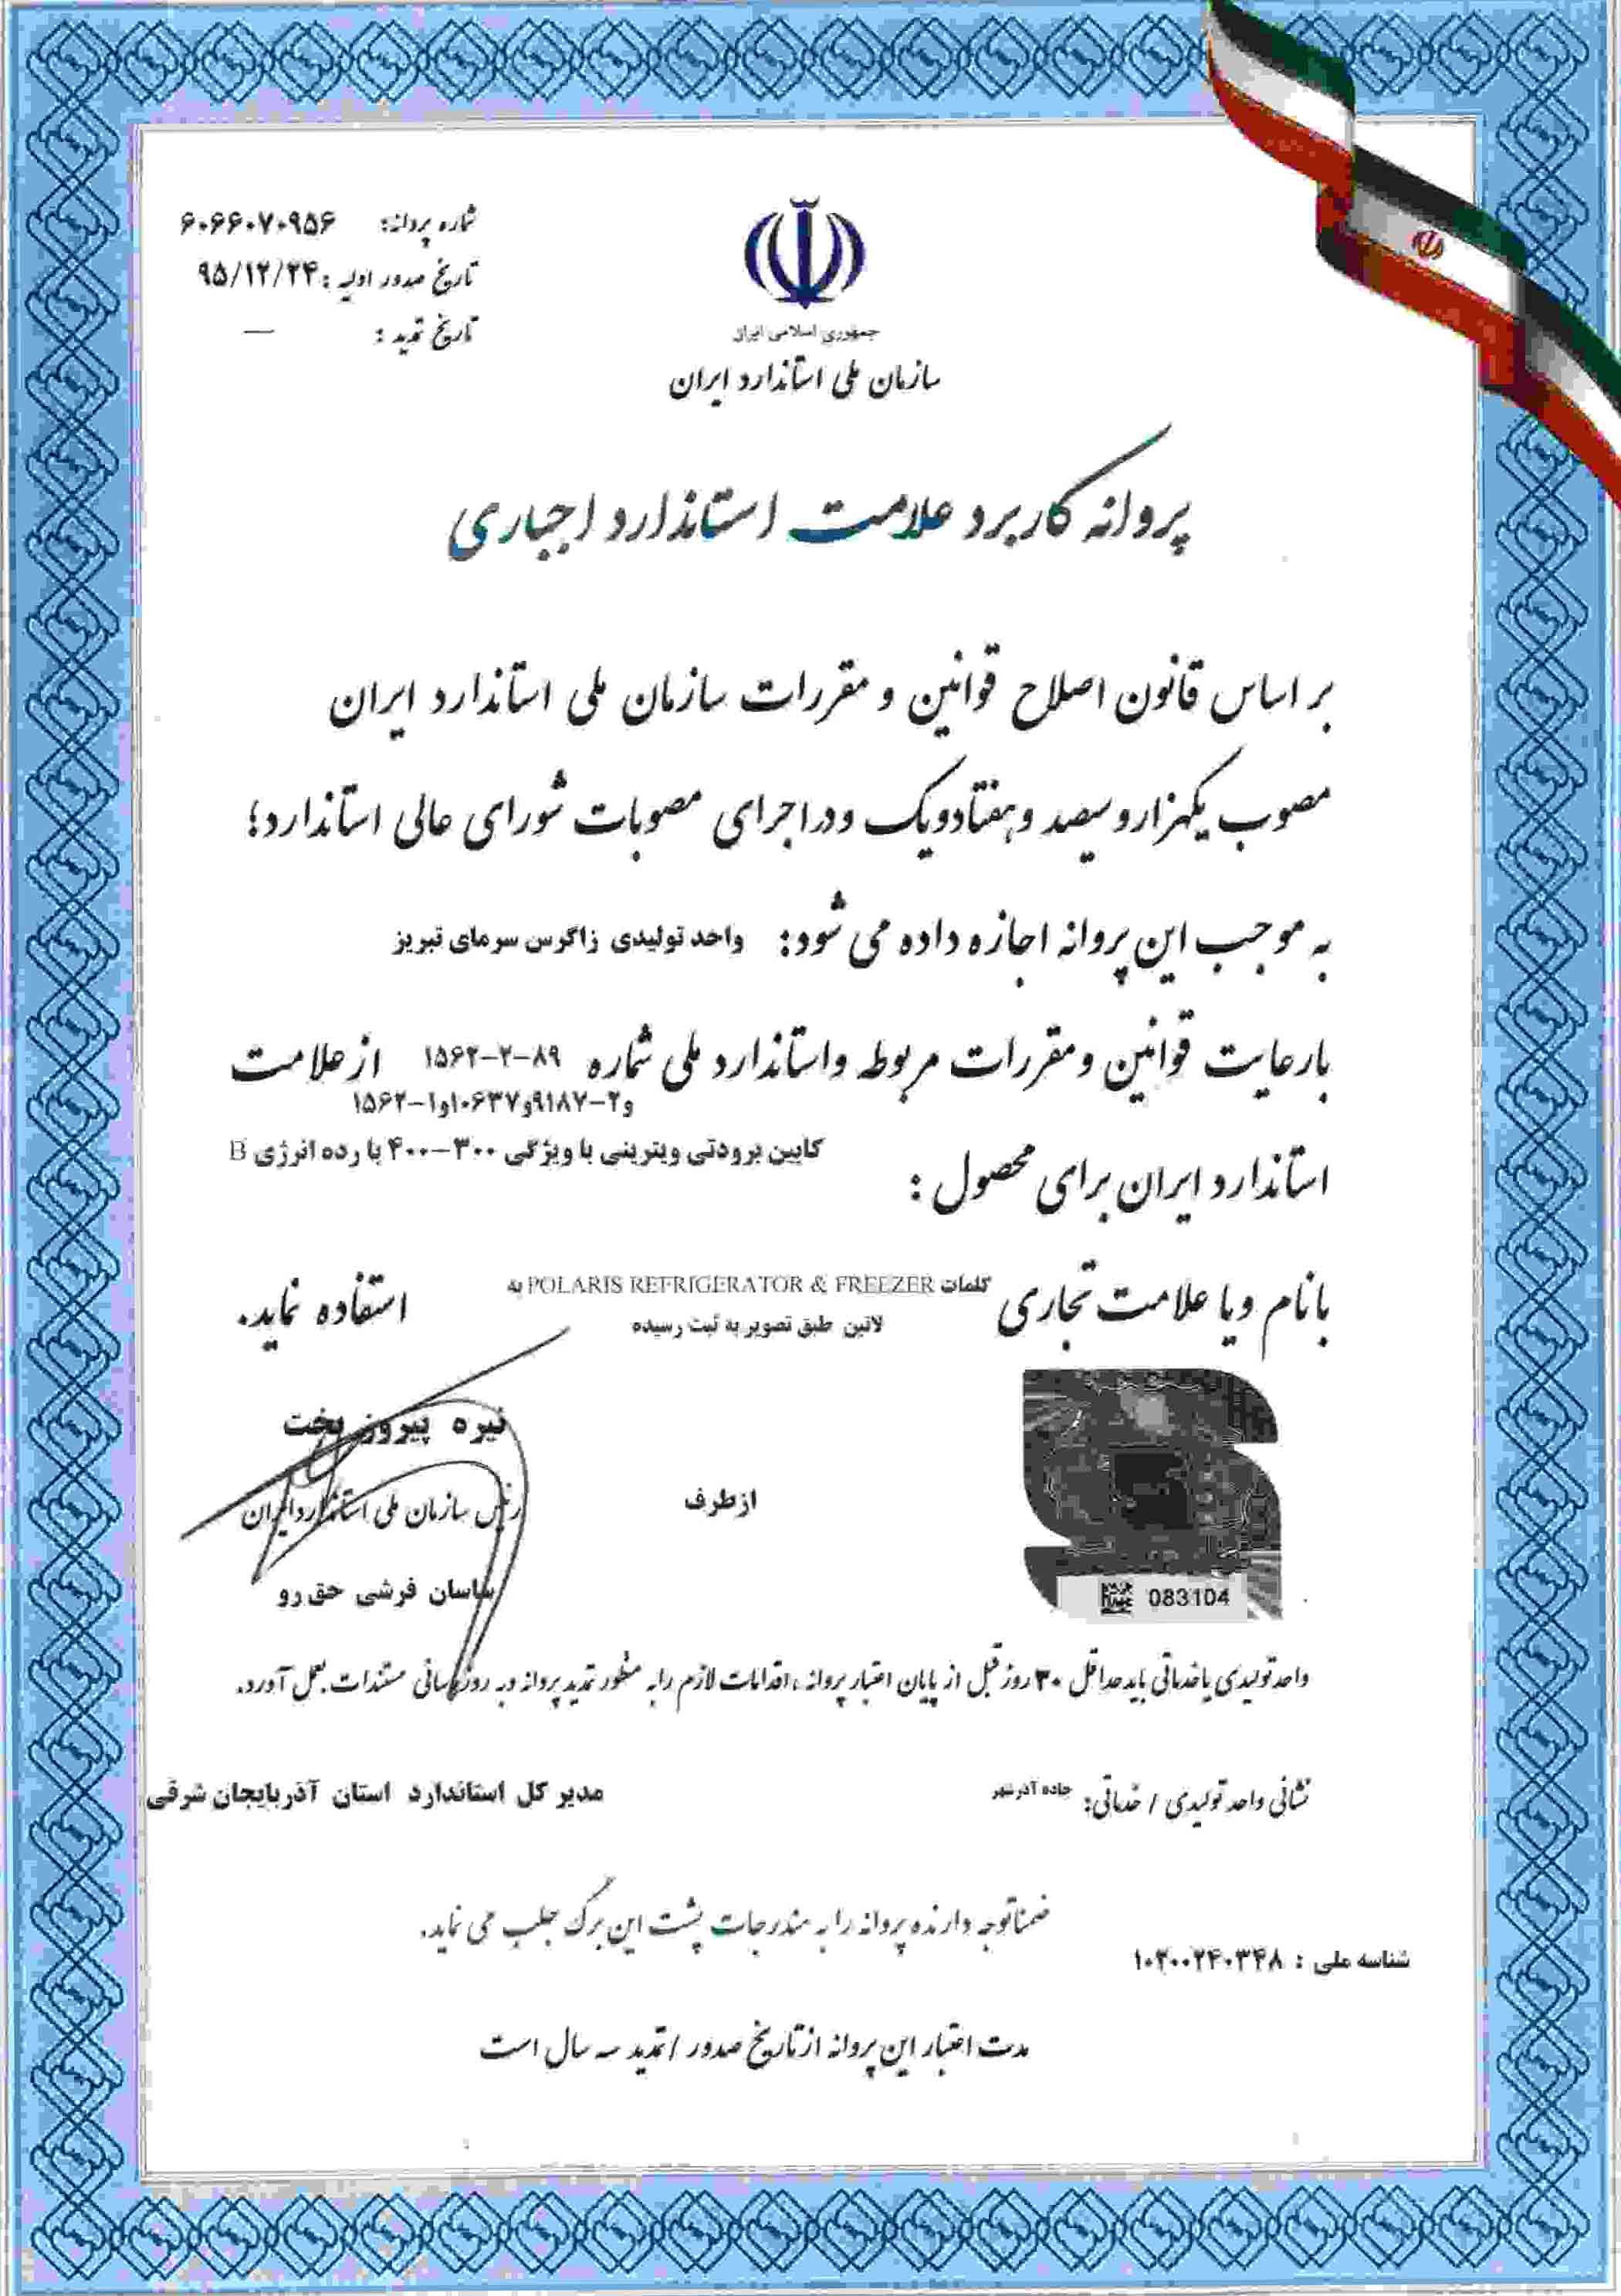 National Iranian Standard